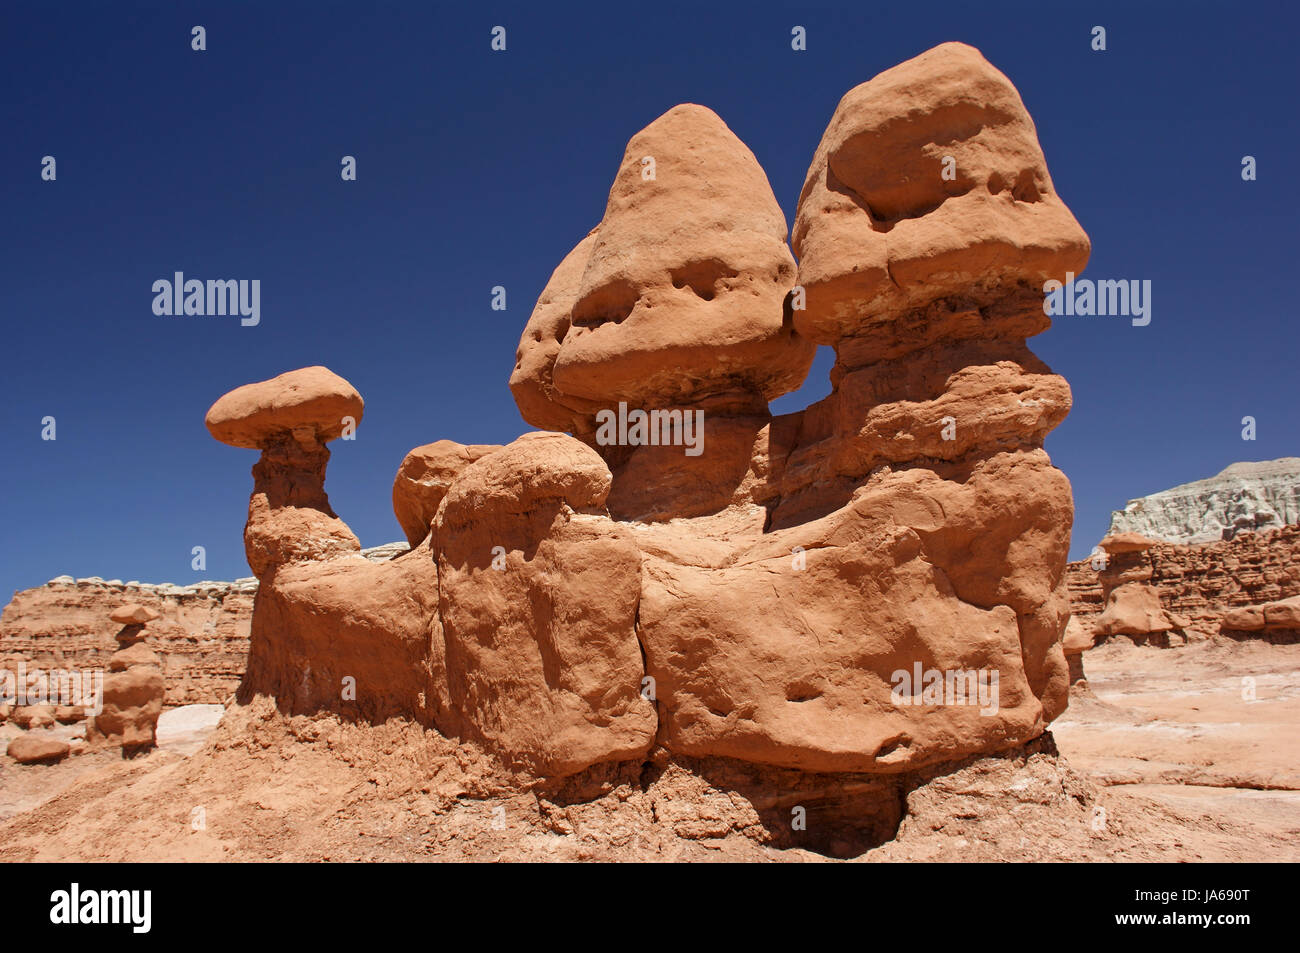 america, erosion, southwest, park, desert, wasteland, holiday, vacation, Stock Photo